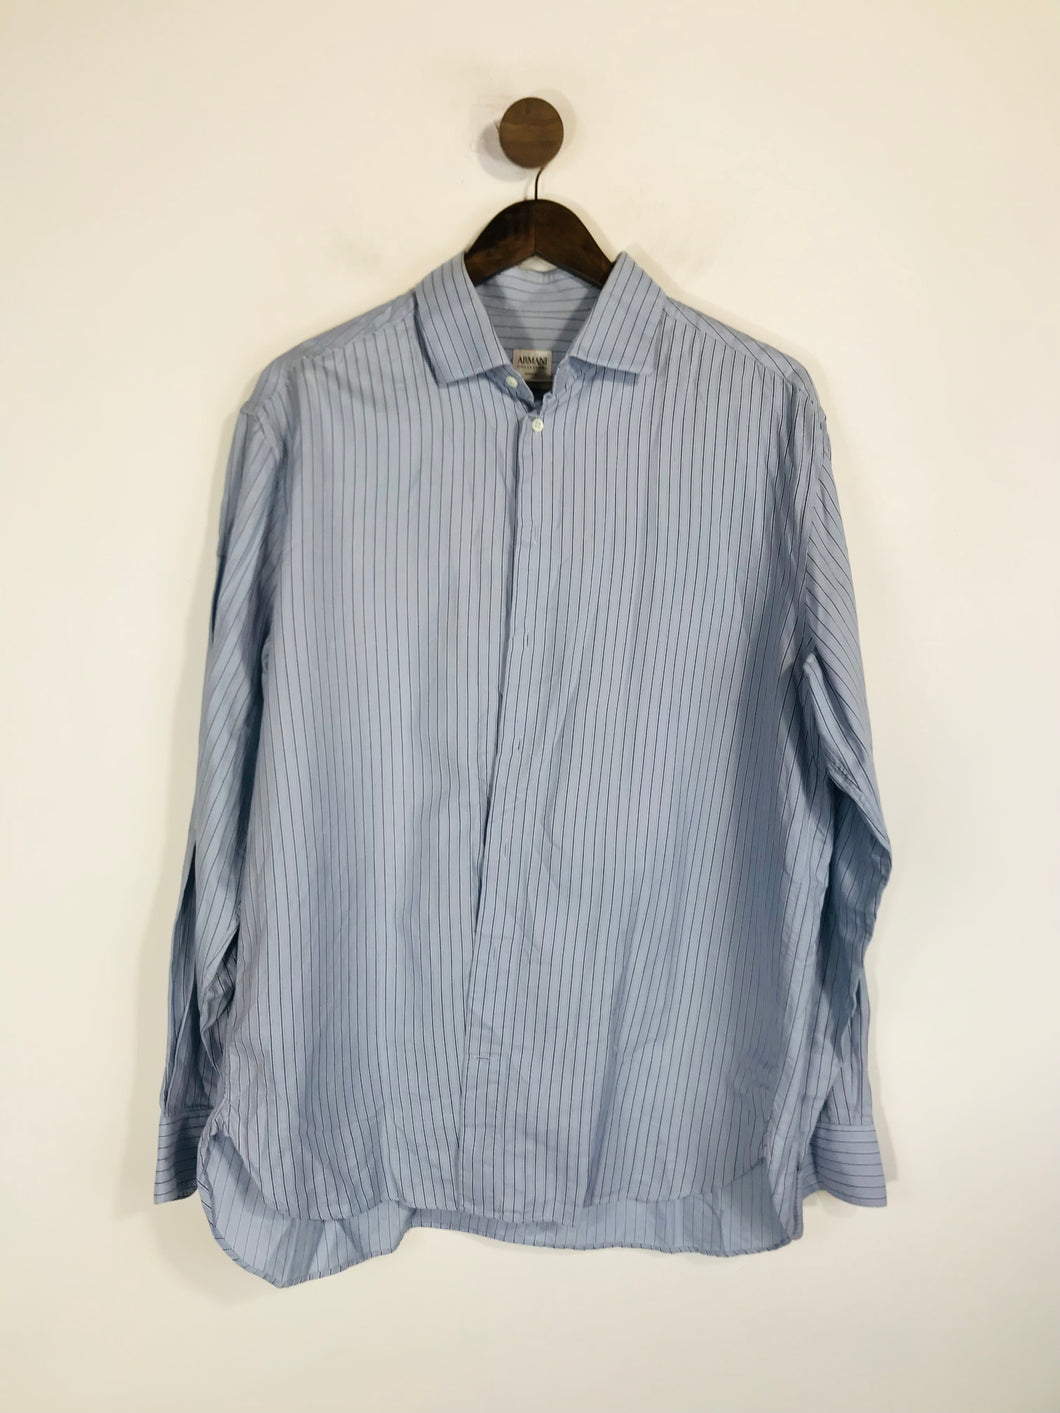 Armani Men's Cotton Striped Button-Up Shirt | L | Blue